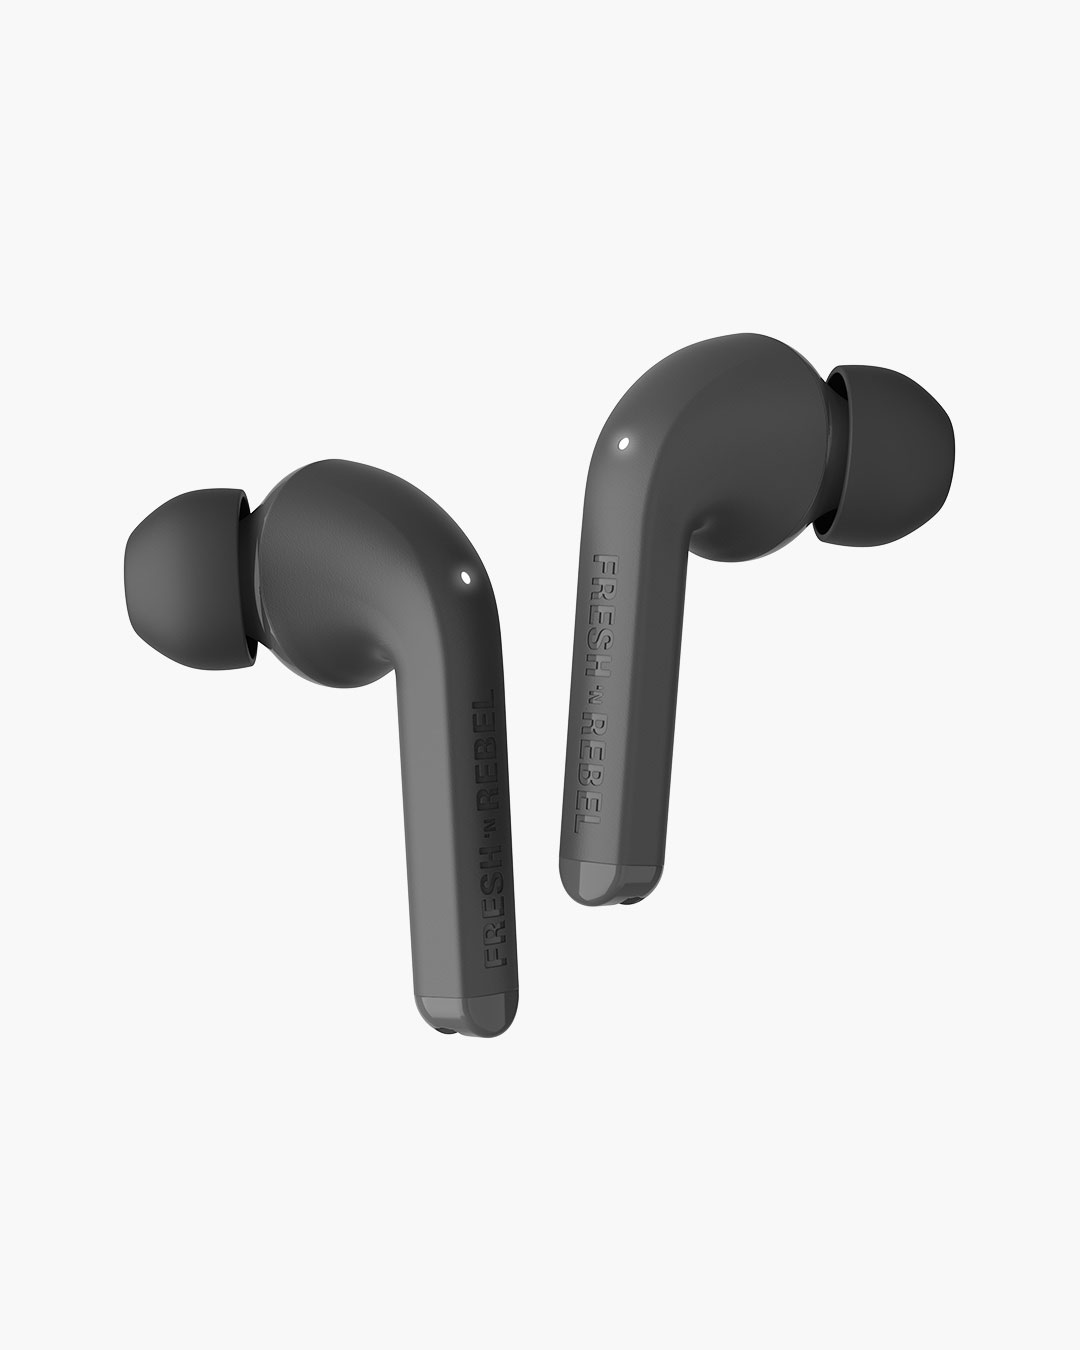 Fresh 'n Rebel - Twins 1 - True Wireless In-ear headphones with ear tip - Storm Grey